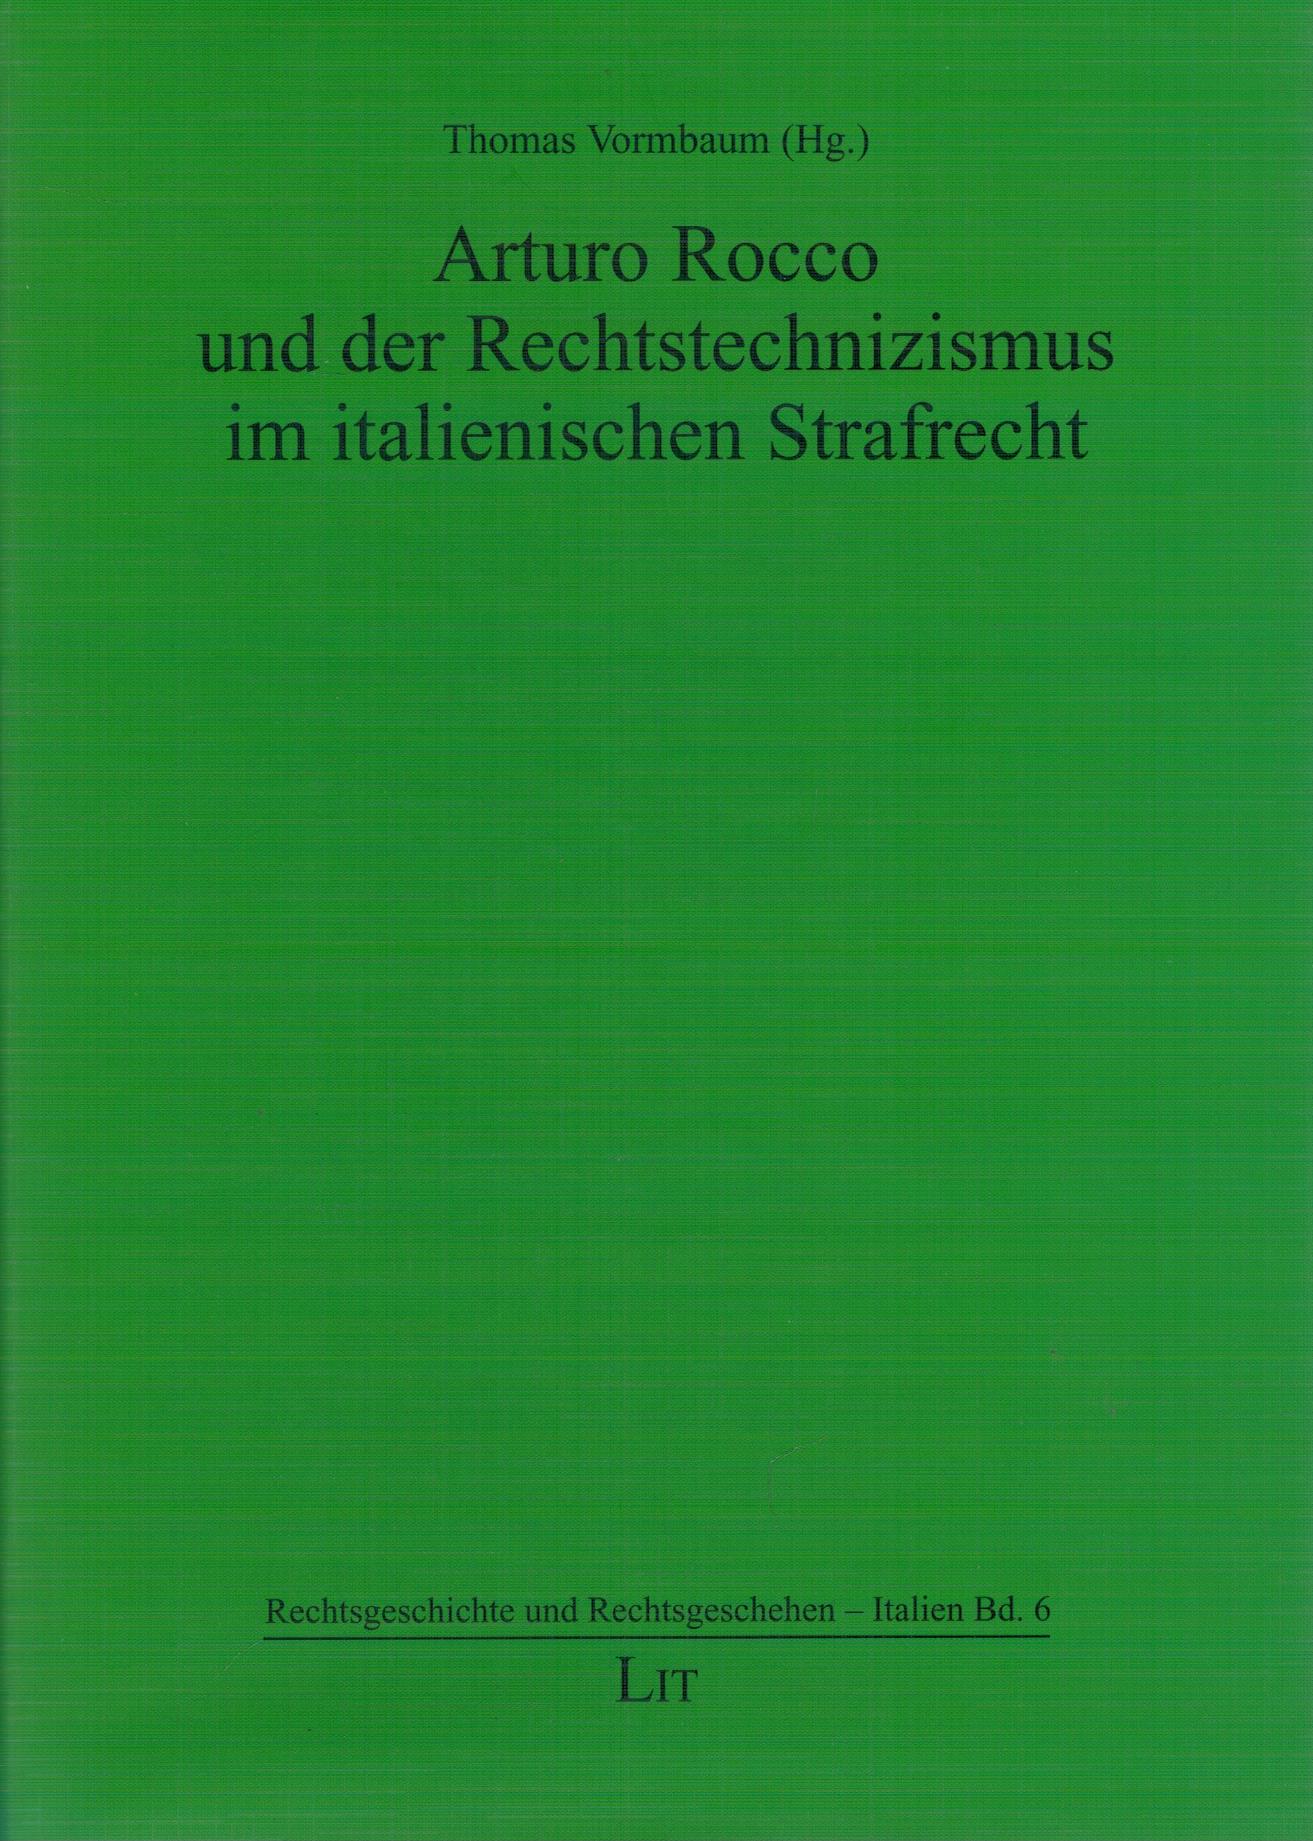 Arturo Rocco und der Rechtstechnizismus im italienischen Straftrecht - Vormbaum, Thomas (Hg.)